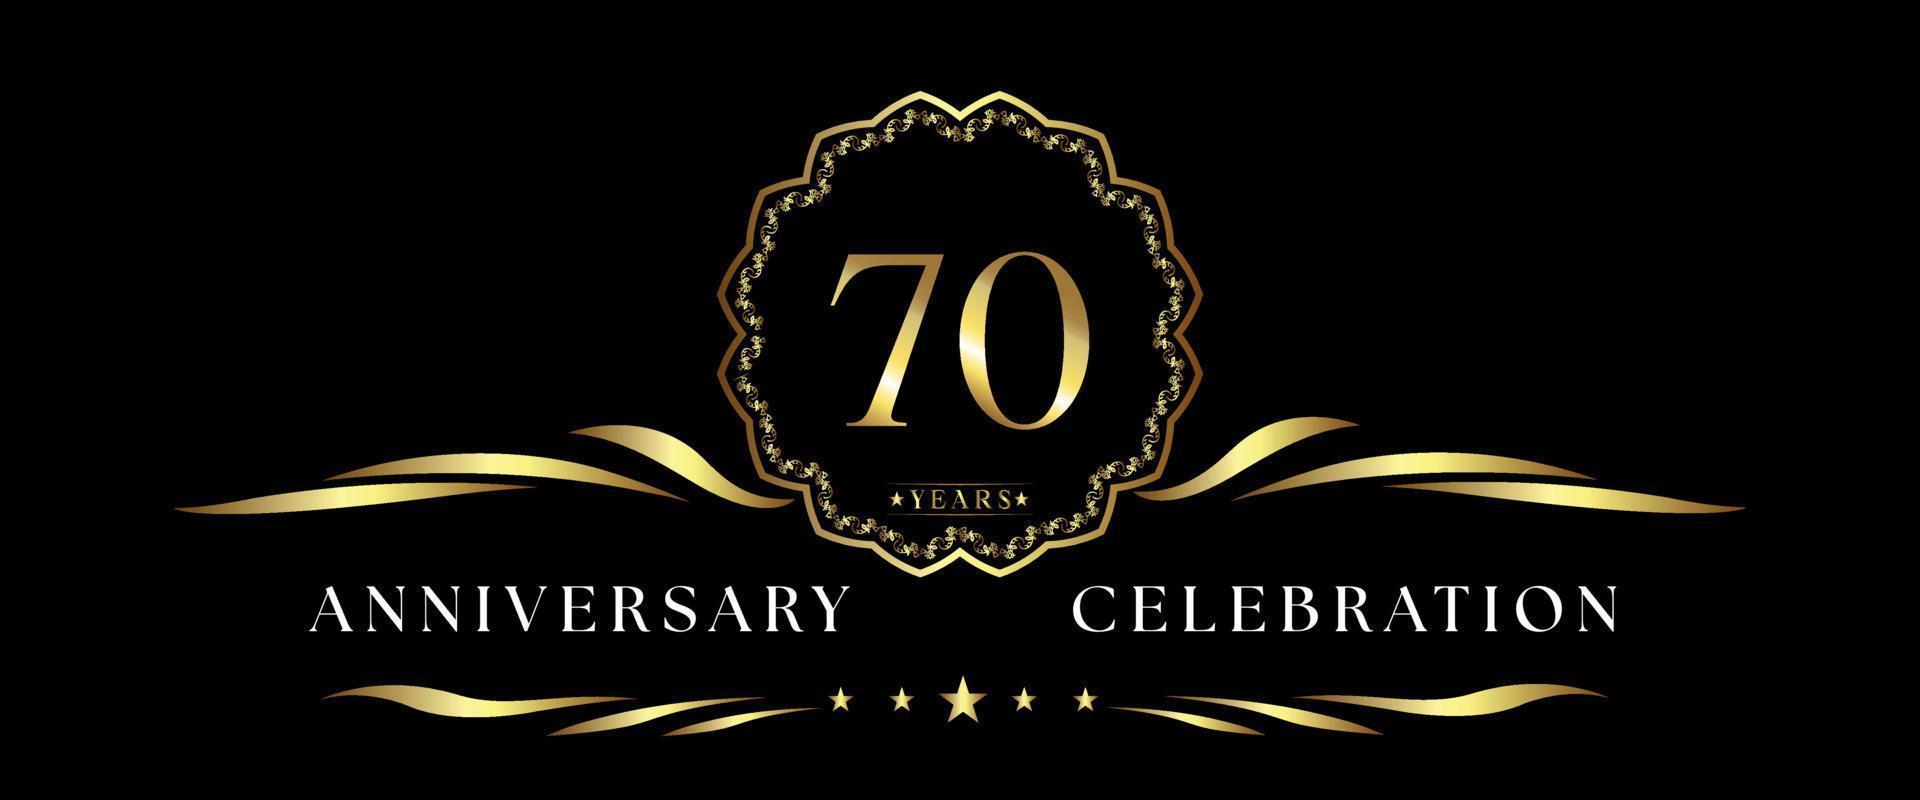 Celebración del aniversario de 70 años con marco decorativo dorado aislado en fondo negro. diseño vectorial para tarjetas de felicitación, fiesta de cumpleaños, boda, fiesta de eventos, ceremonia. Logotipo del aniversario de 70 años. vector